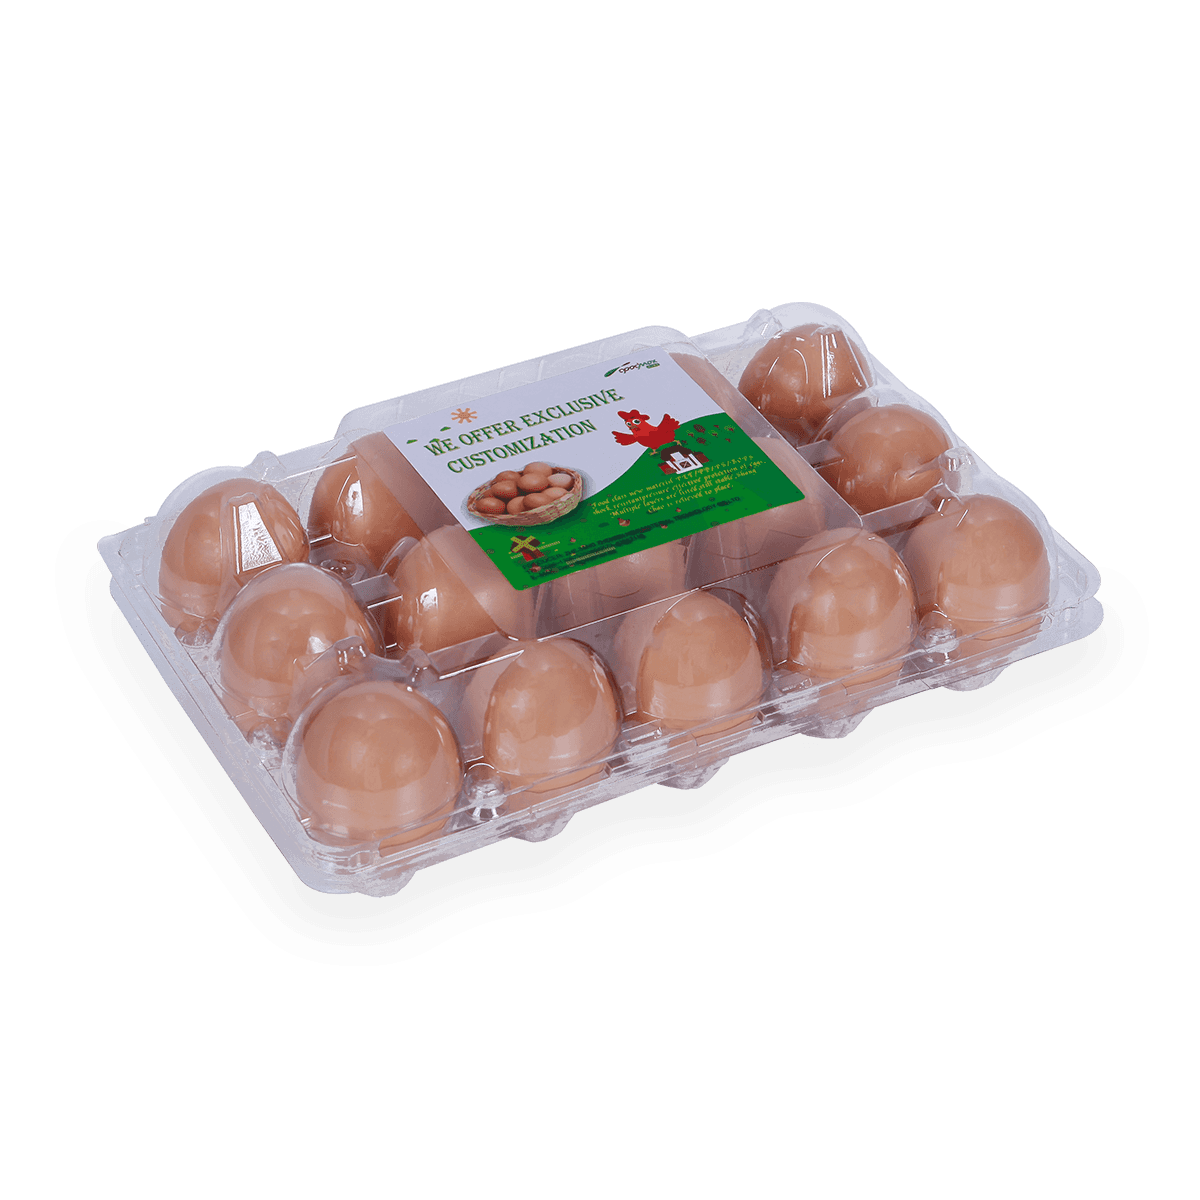 100% reciclable 6 12 18 20 24 25 celdas cartones de huevos de plástico etiquetados